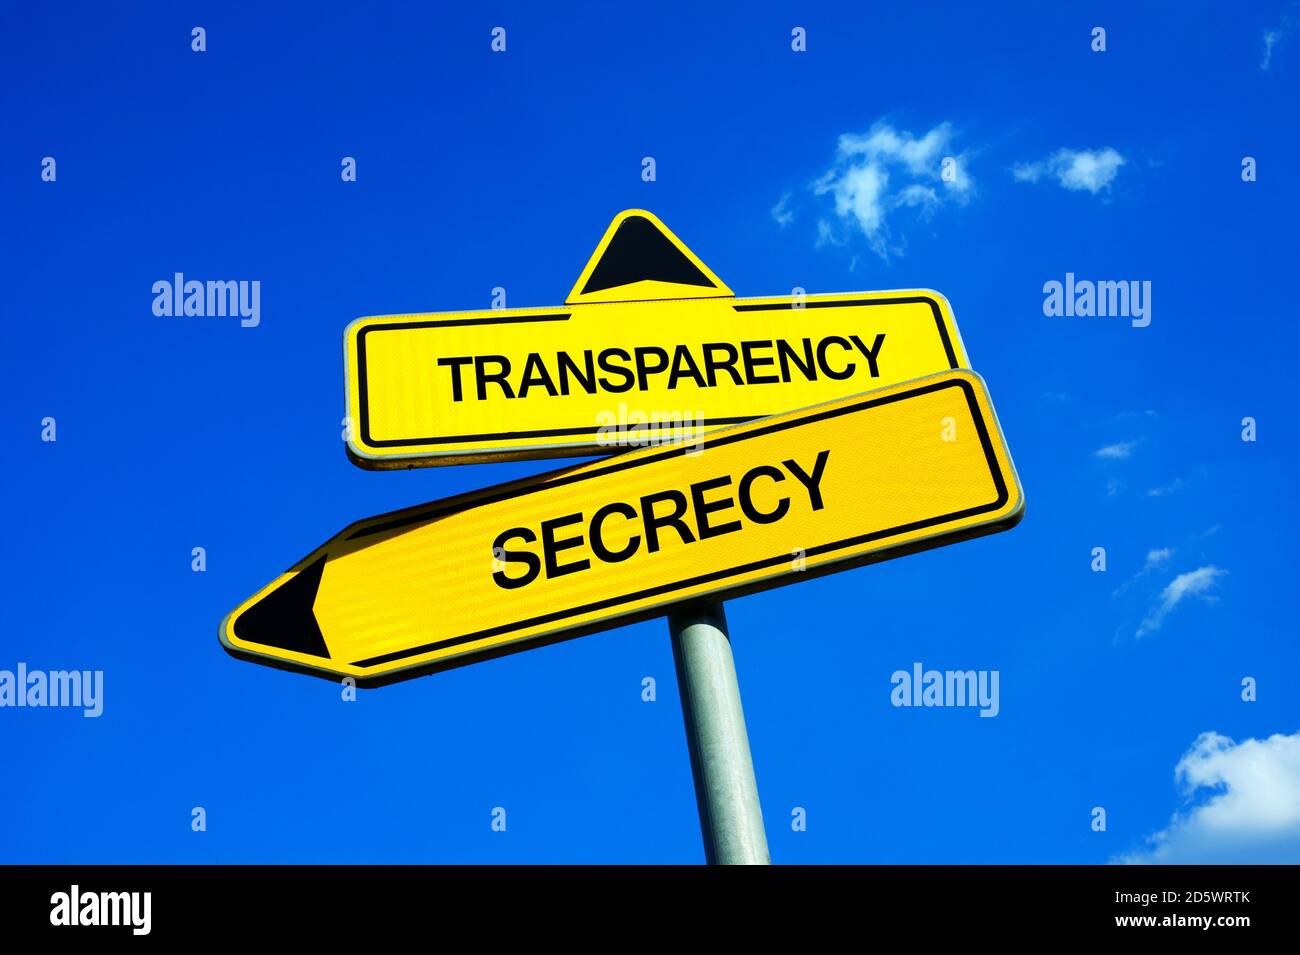 Transparenz vs Geheimhaltung - Verkehrszeichen mit zwei Optionen - geheim halten über wichtige Informationen oder transparent sein. Verhinderung von Korruption Stockfoto